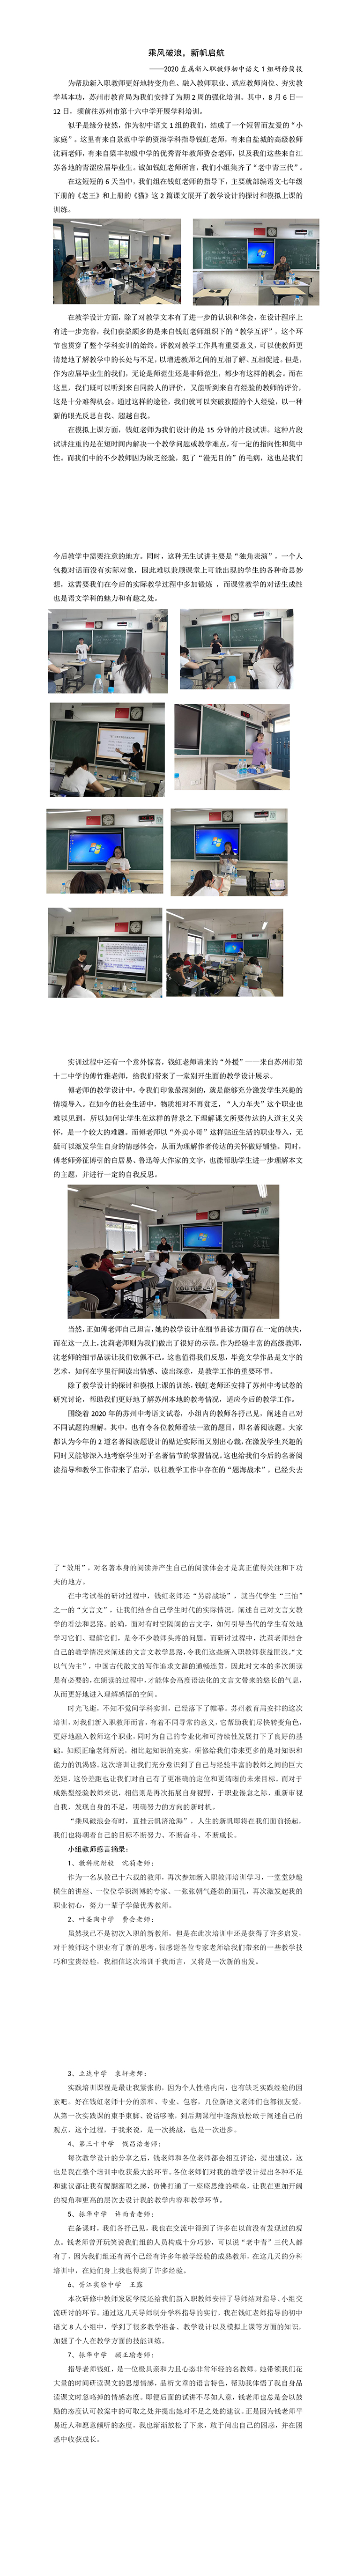 2020直属新入职教师暑期研修初中语文钱虹组培训简报.jpg